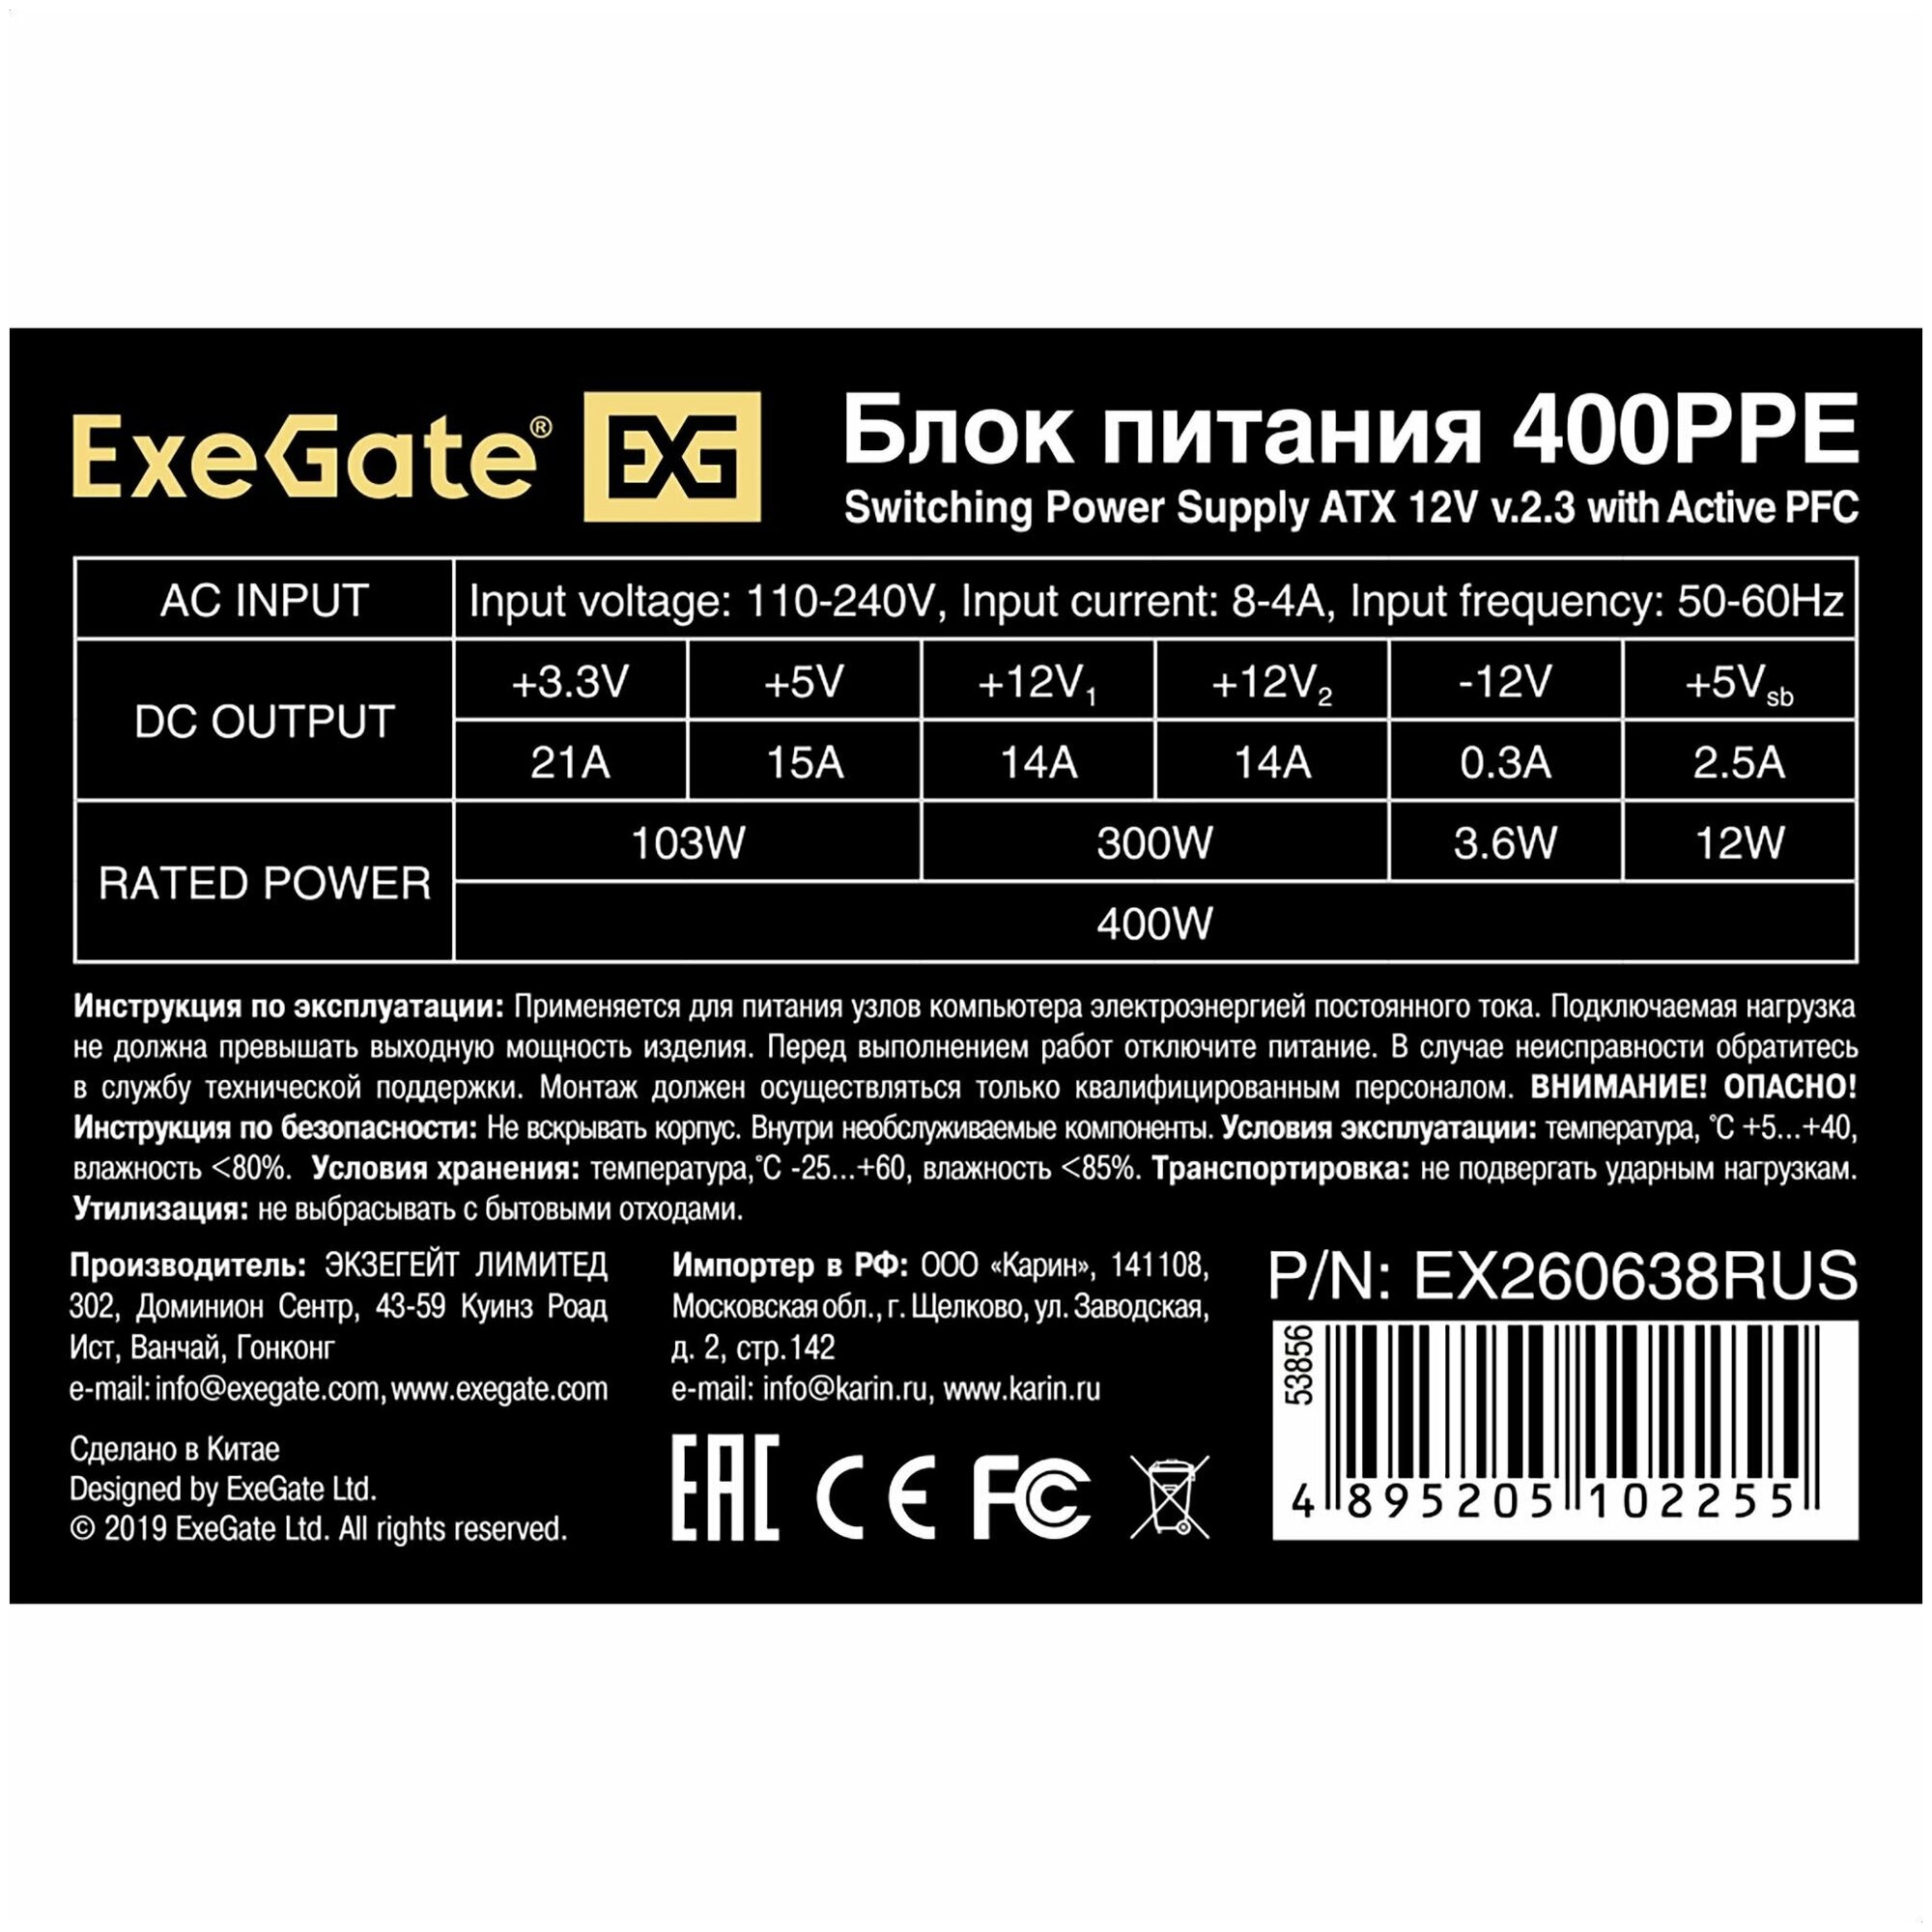 Блок питания ExeGate 400PPE EX260638RUS - фото №6